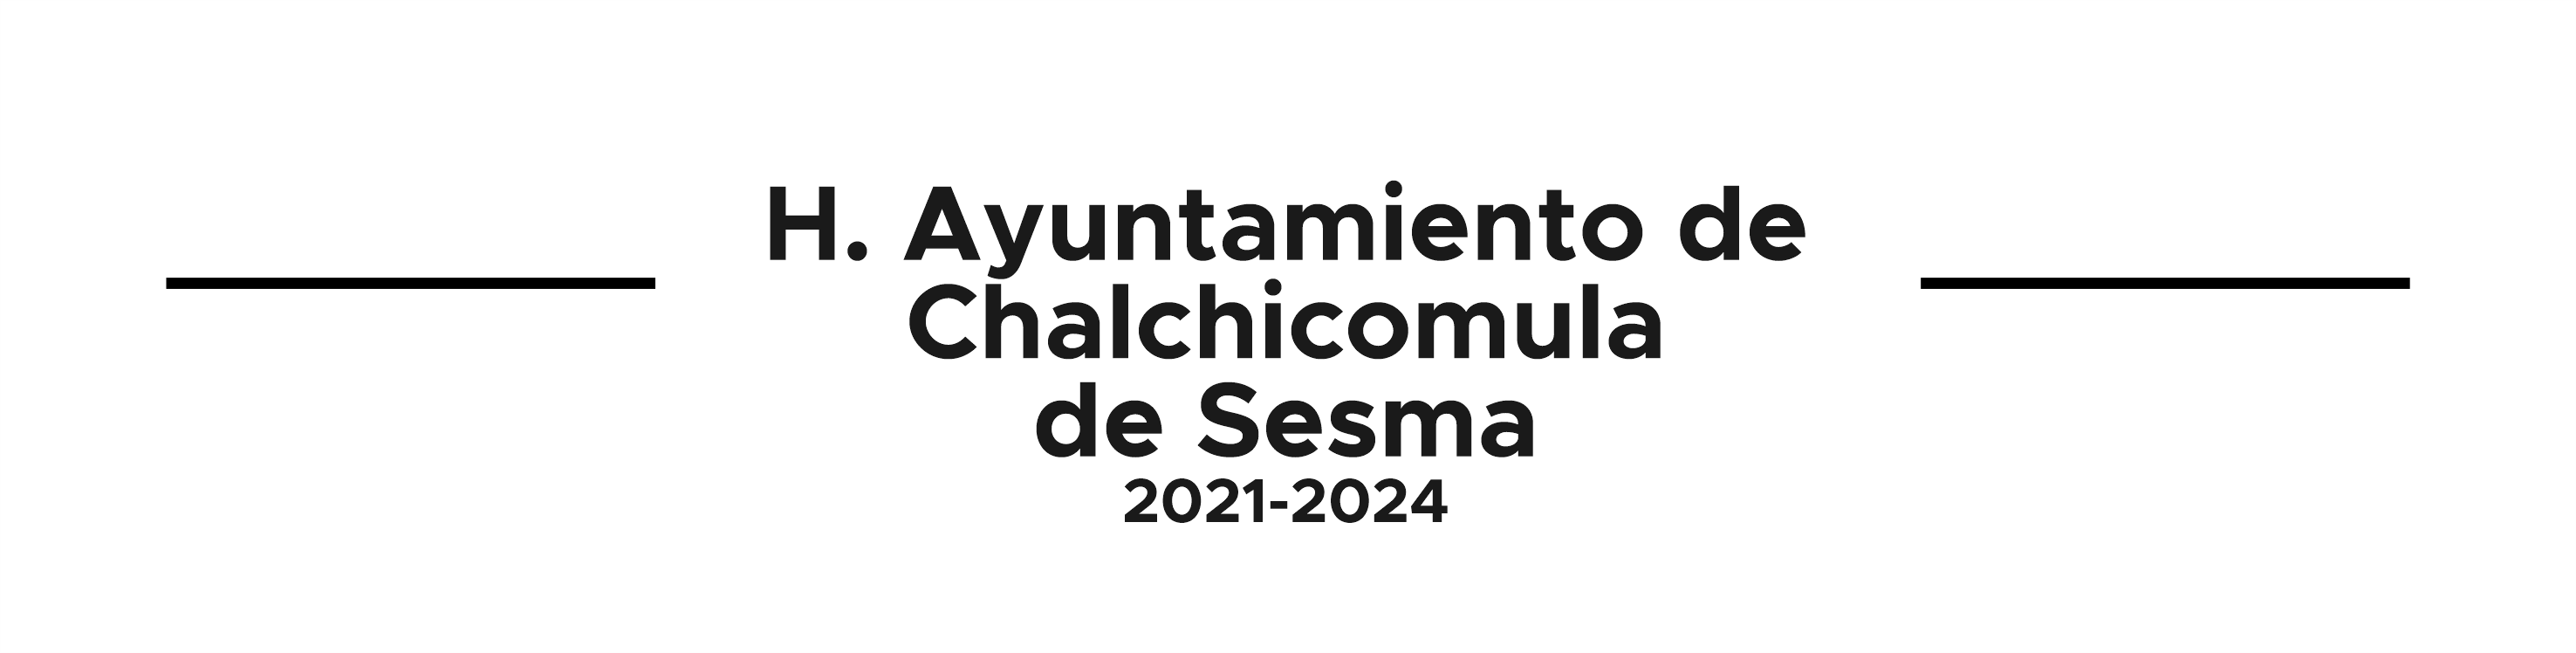 H. Ayuntamiento de Chalchicomula de Sesma 2021 - 2024